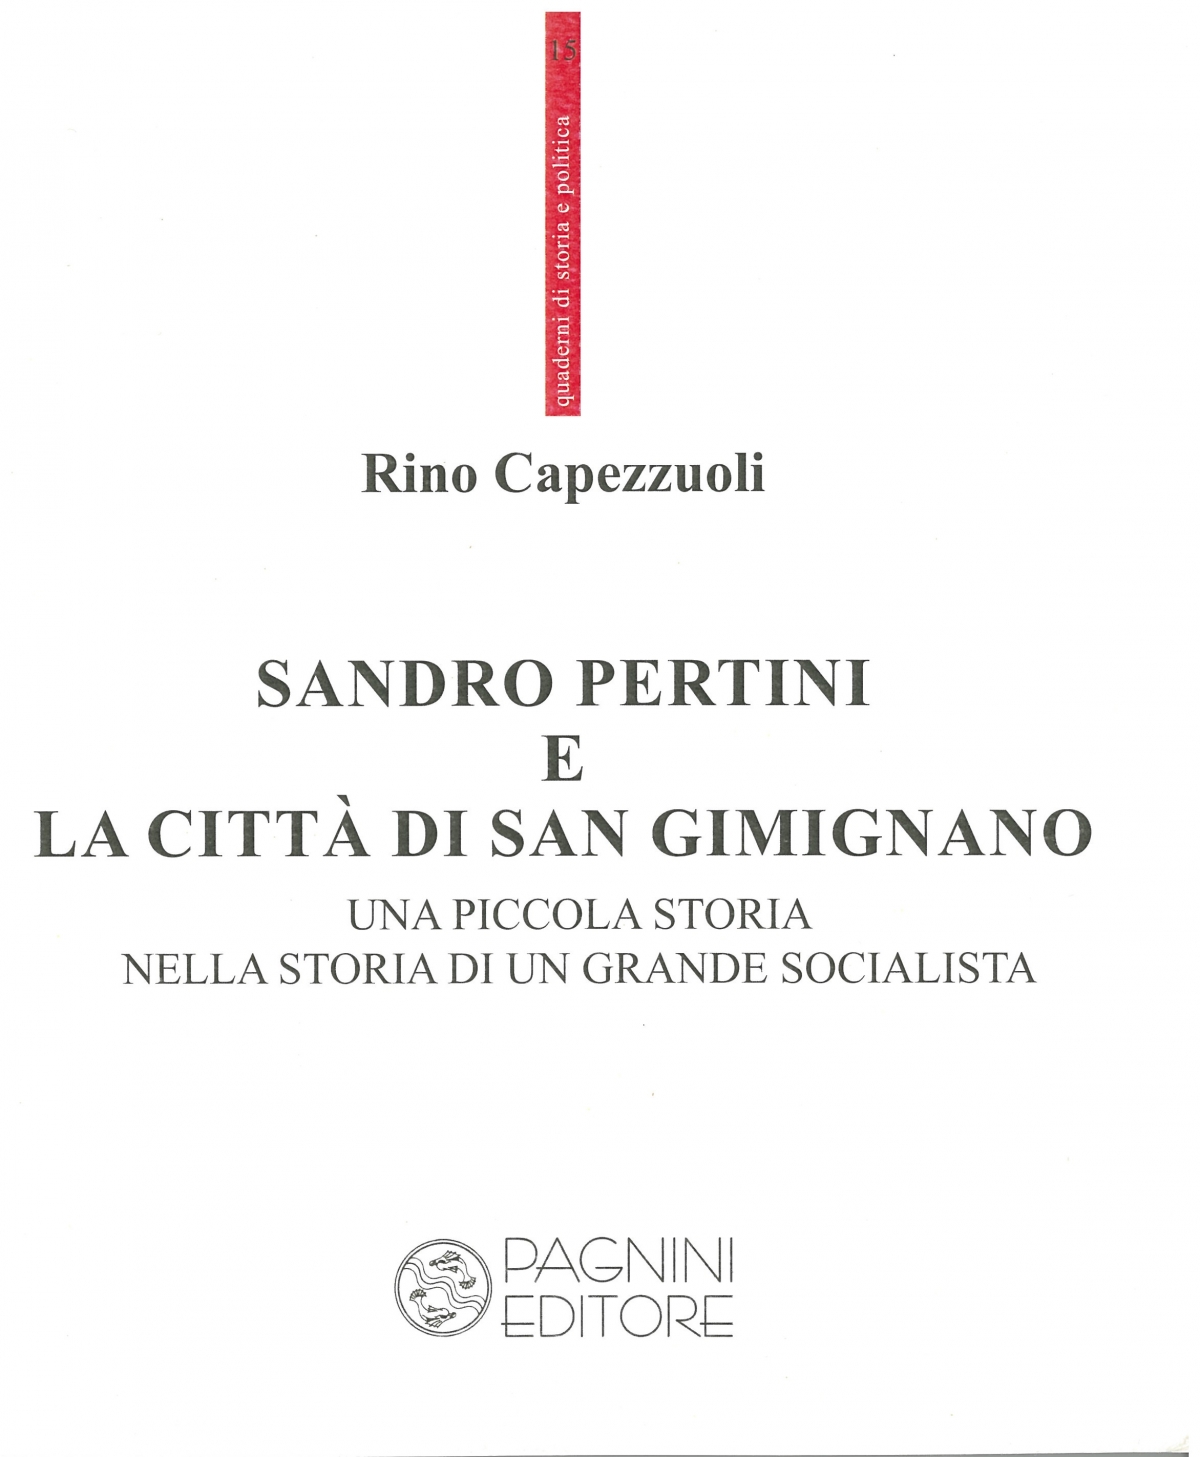  Sandro Pertini e la città di San Gimignano